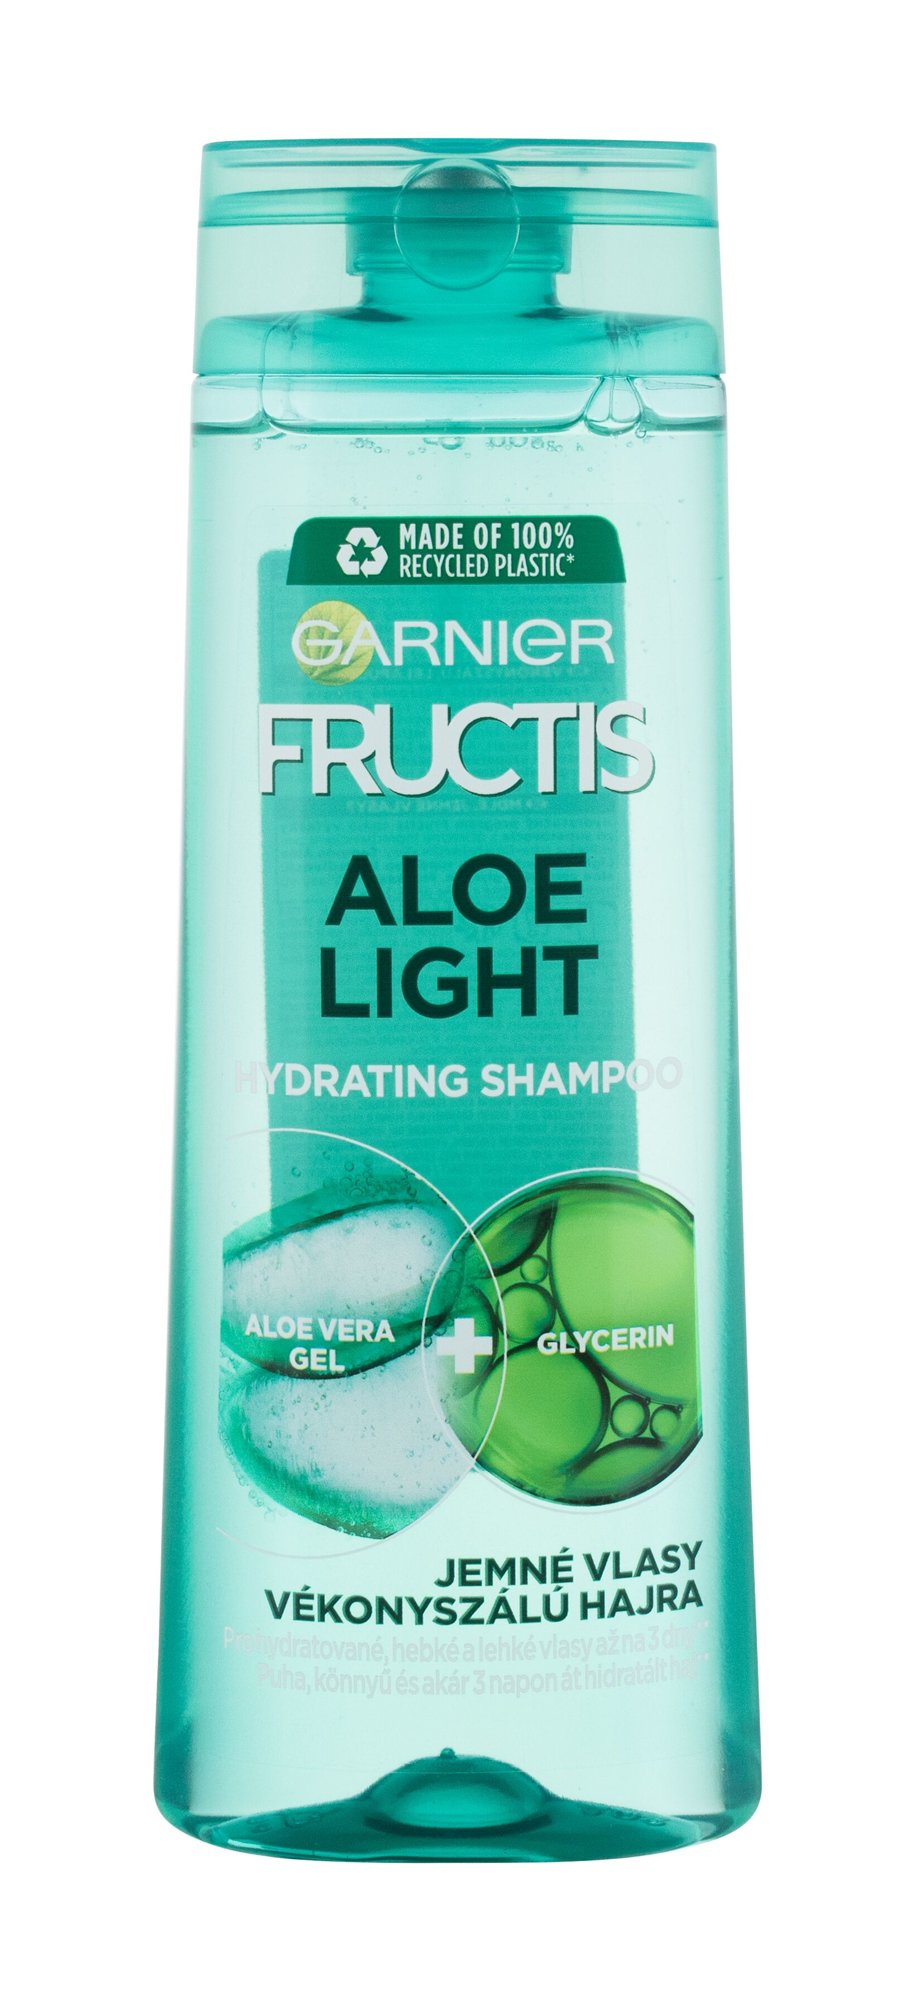 Garnier Fructis Aloe Light 400ml šampūnas